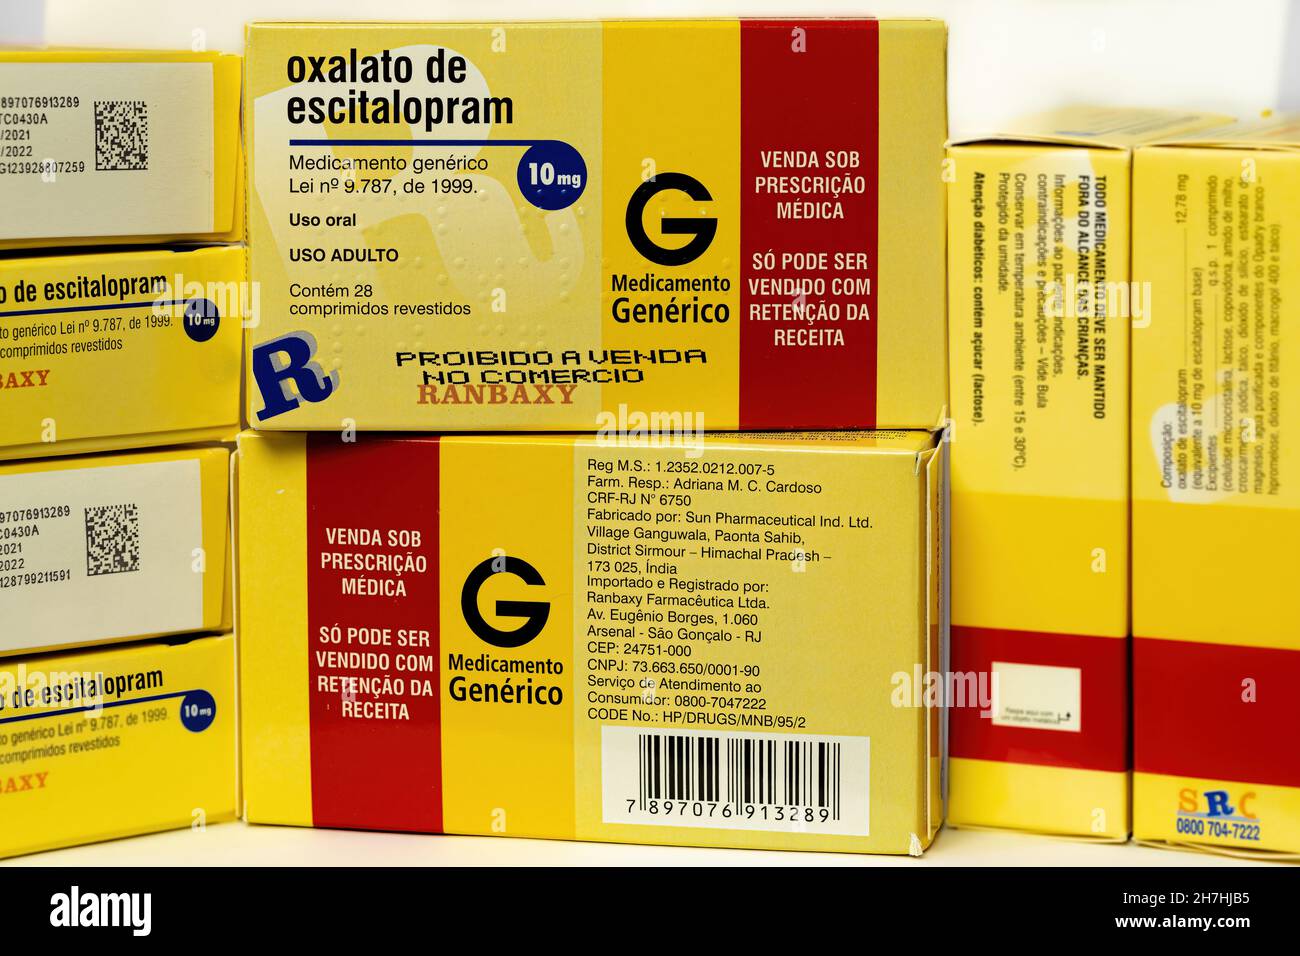 Cassilandia, Mato Grosso do Sul, Brasilien - 11 20 2021: Schachteln mit Escitalopram Oxalat in portugiesischer brasilianischer psychiatrischer Medizin Stockfoto